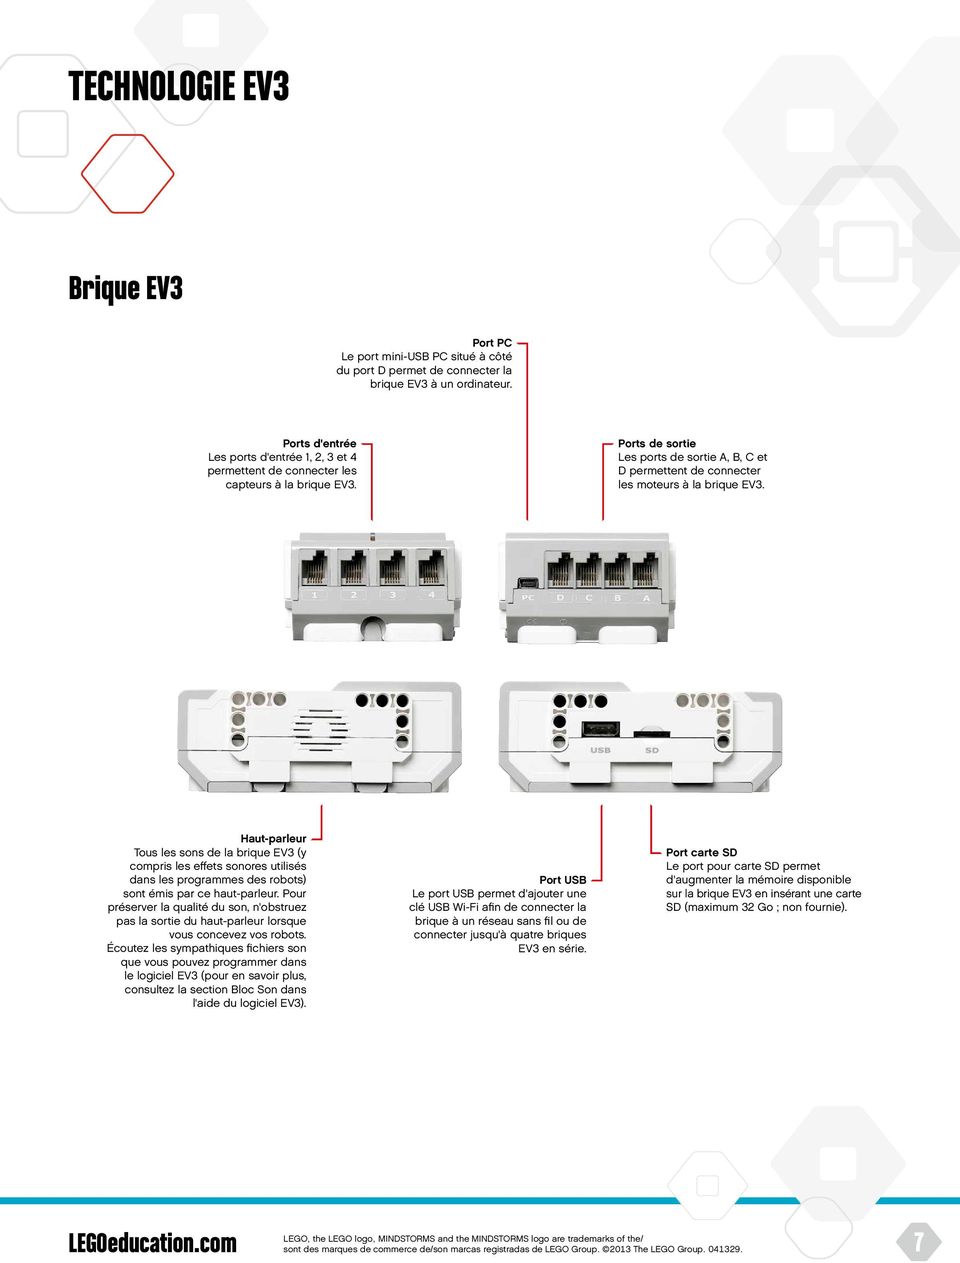 Ports de sortie Les ports de sortie A, B, C et D permettent de connecter les moteurs à la brique EV3.